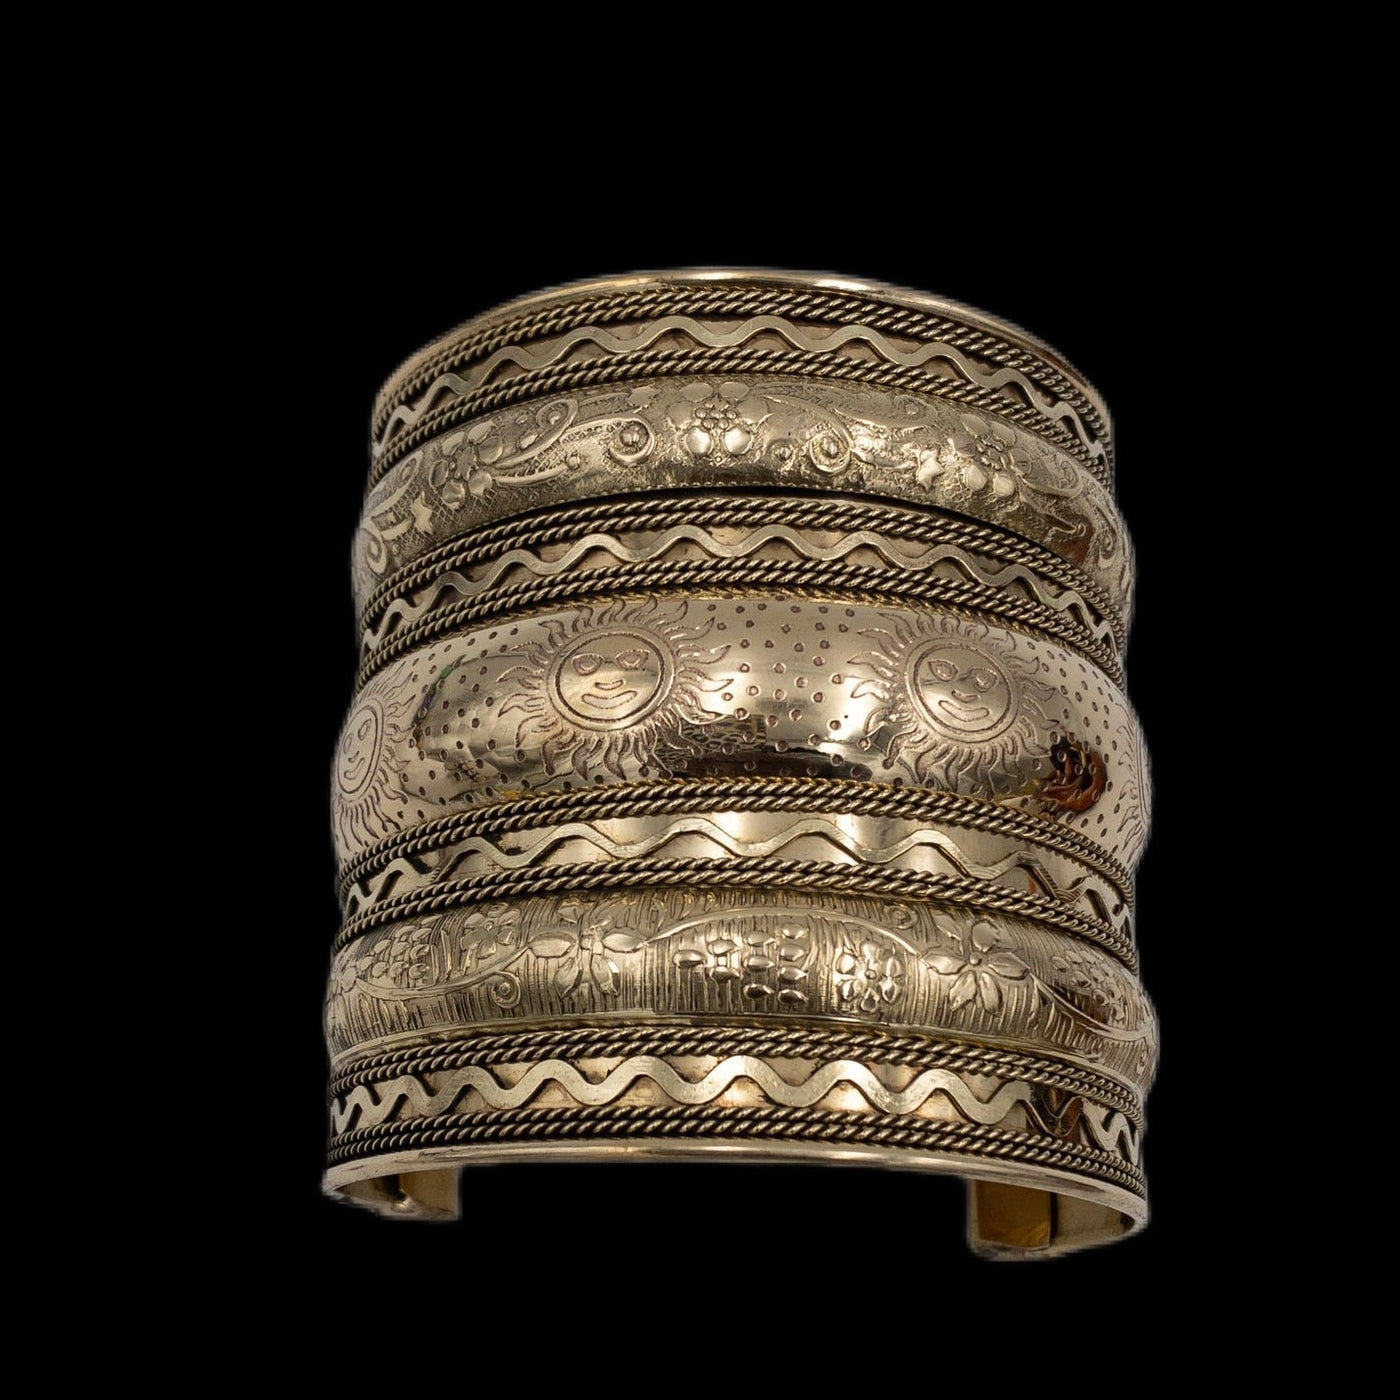 The sun goddess brass cuff bracelet